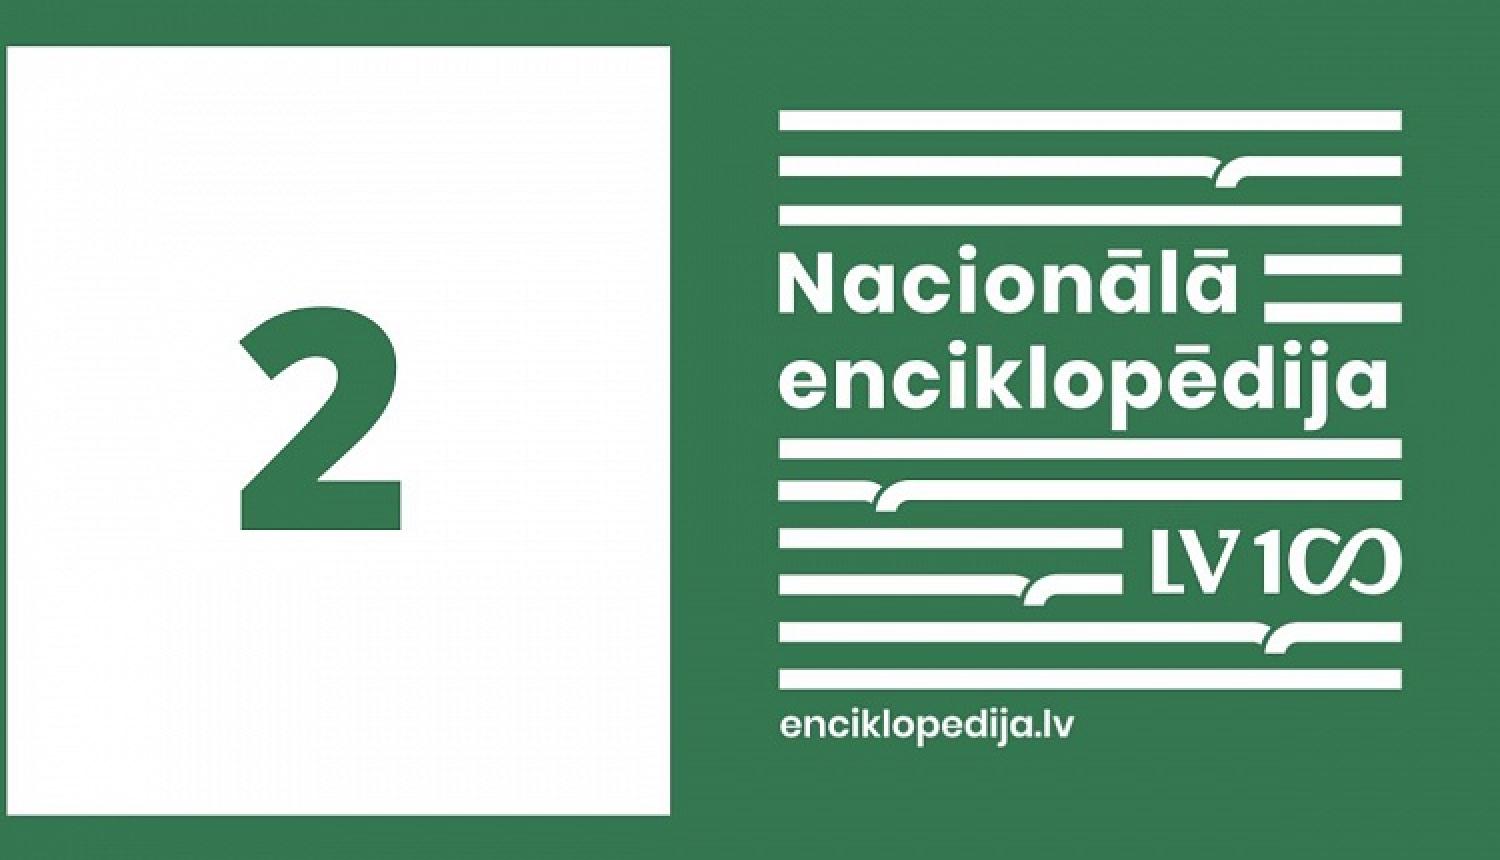 Nacionālajai enciklopēdijai – otrā gadadiena | Pārskats par 2020. gadu